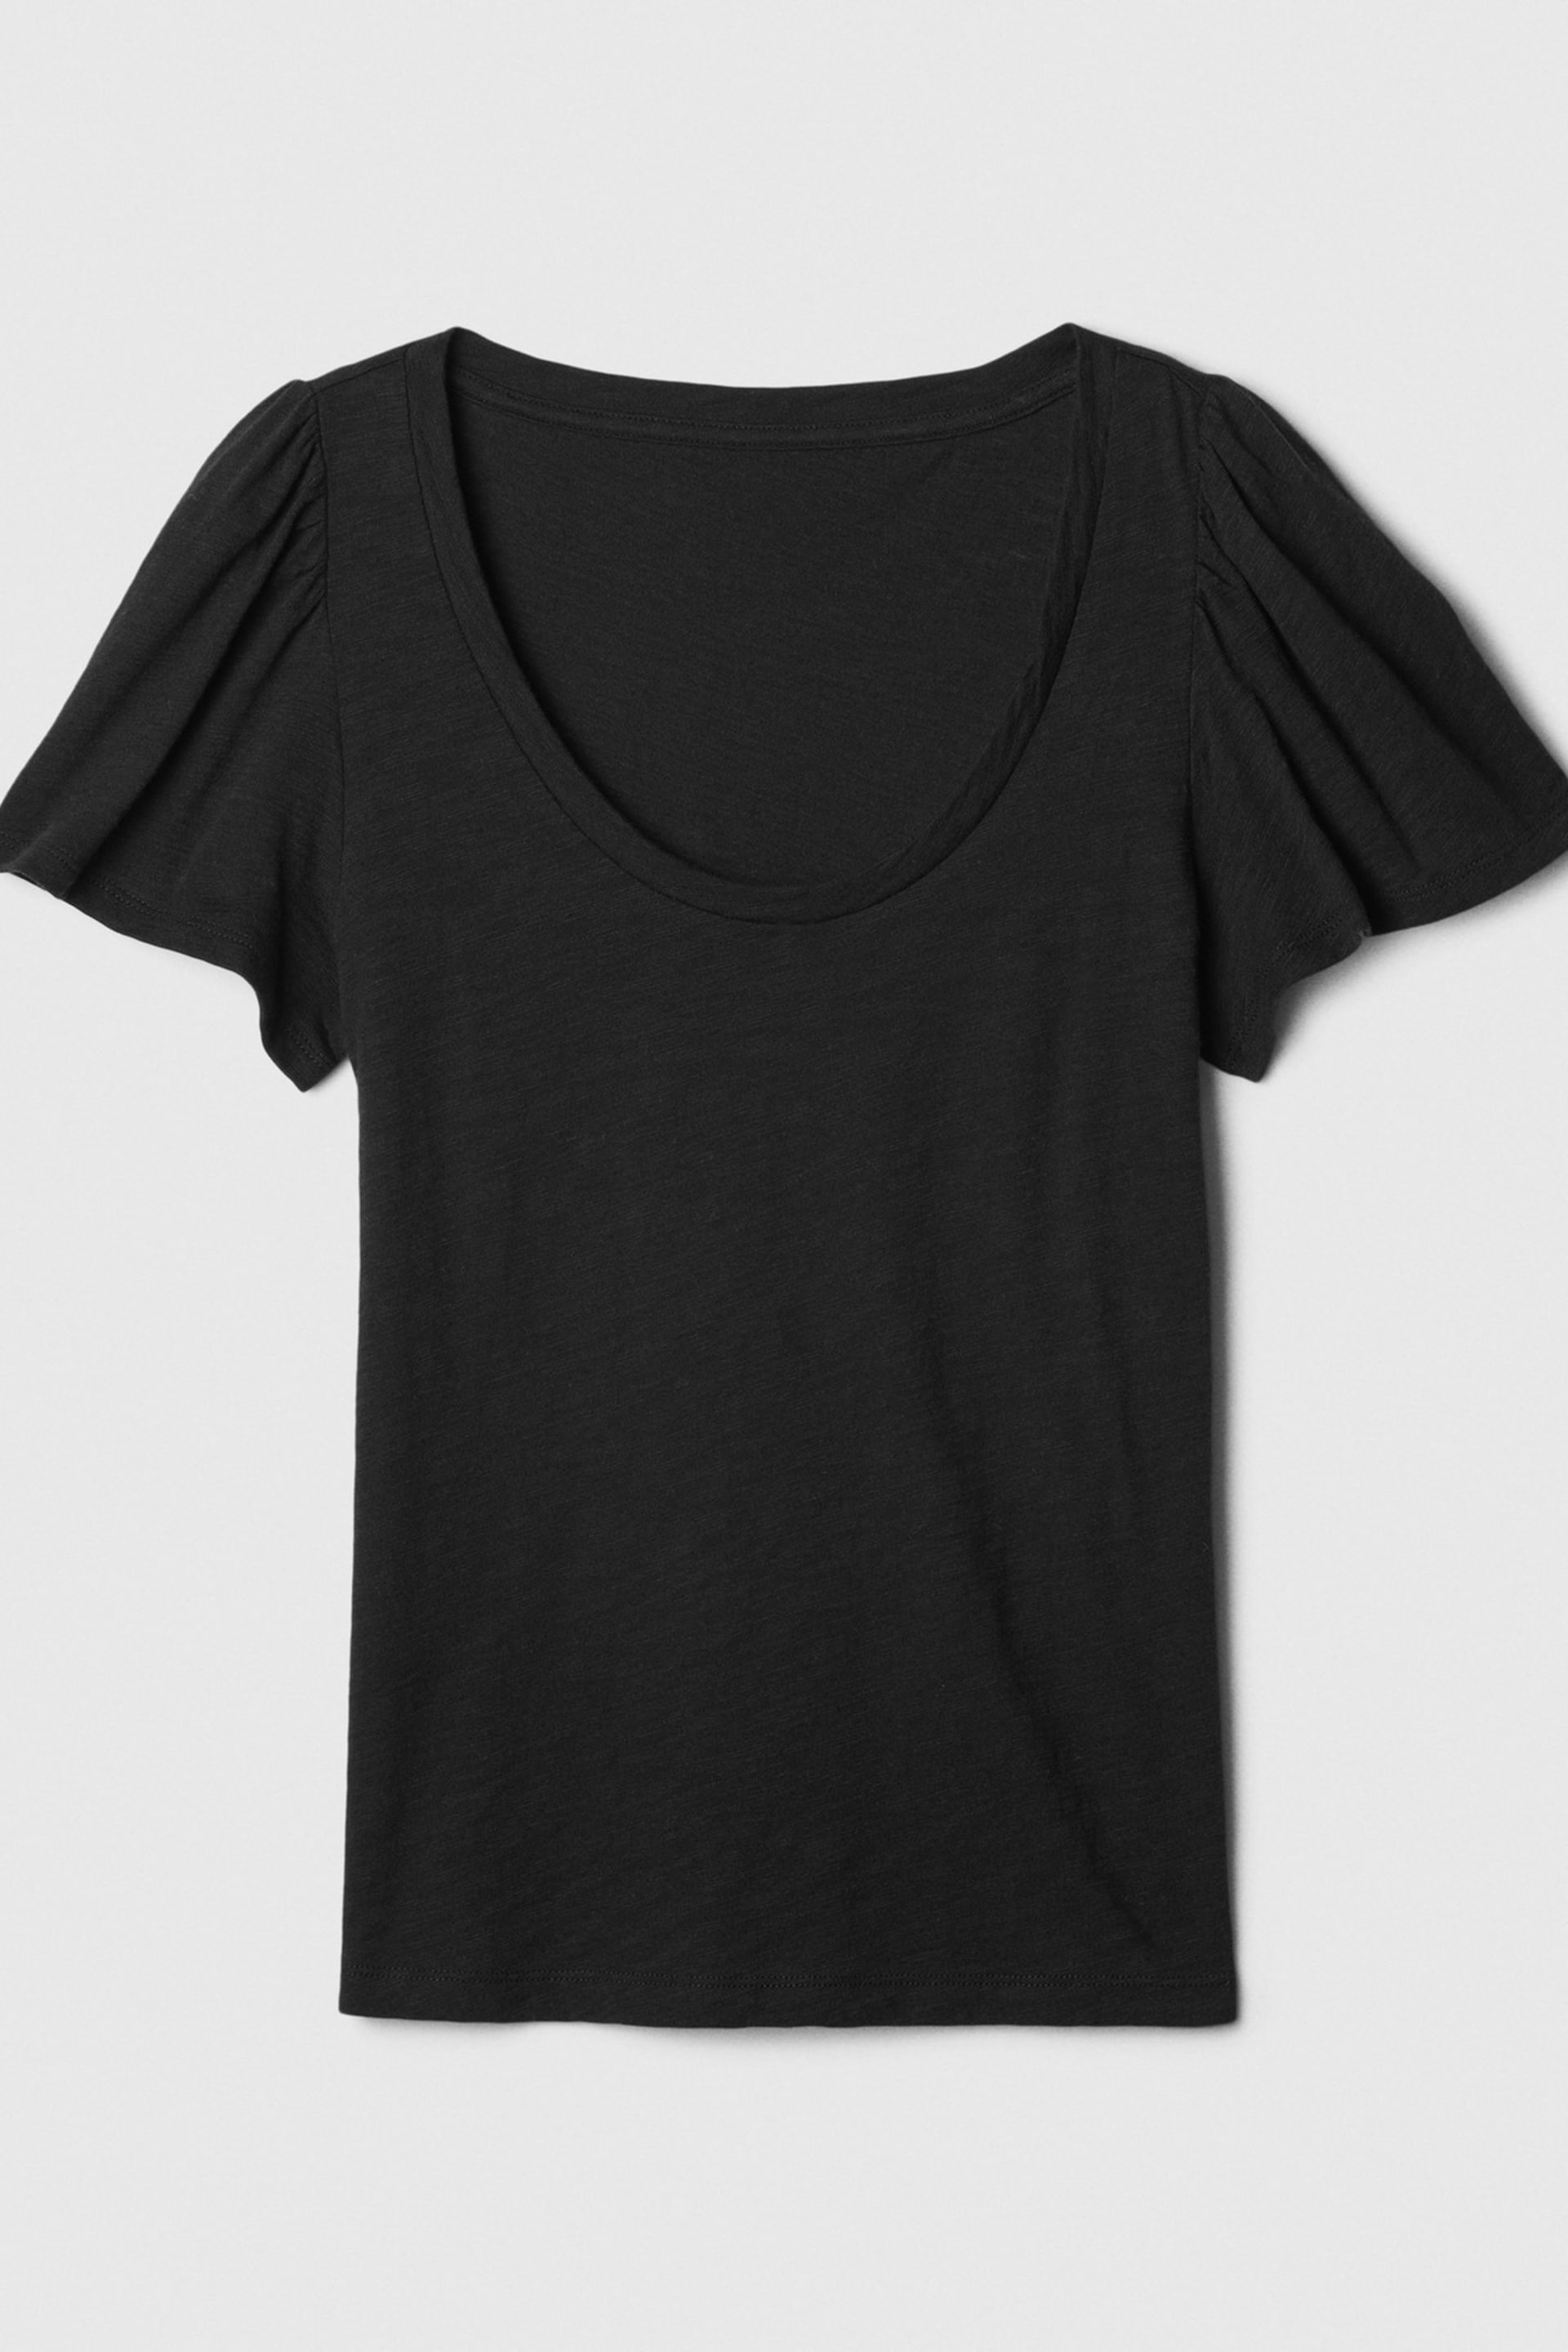 Gap Black ForeverSoft Slub Short Sleeve T-Shirt - Image 5 of 5